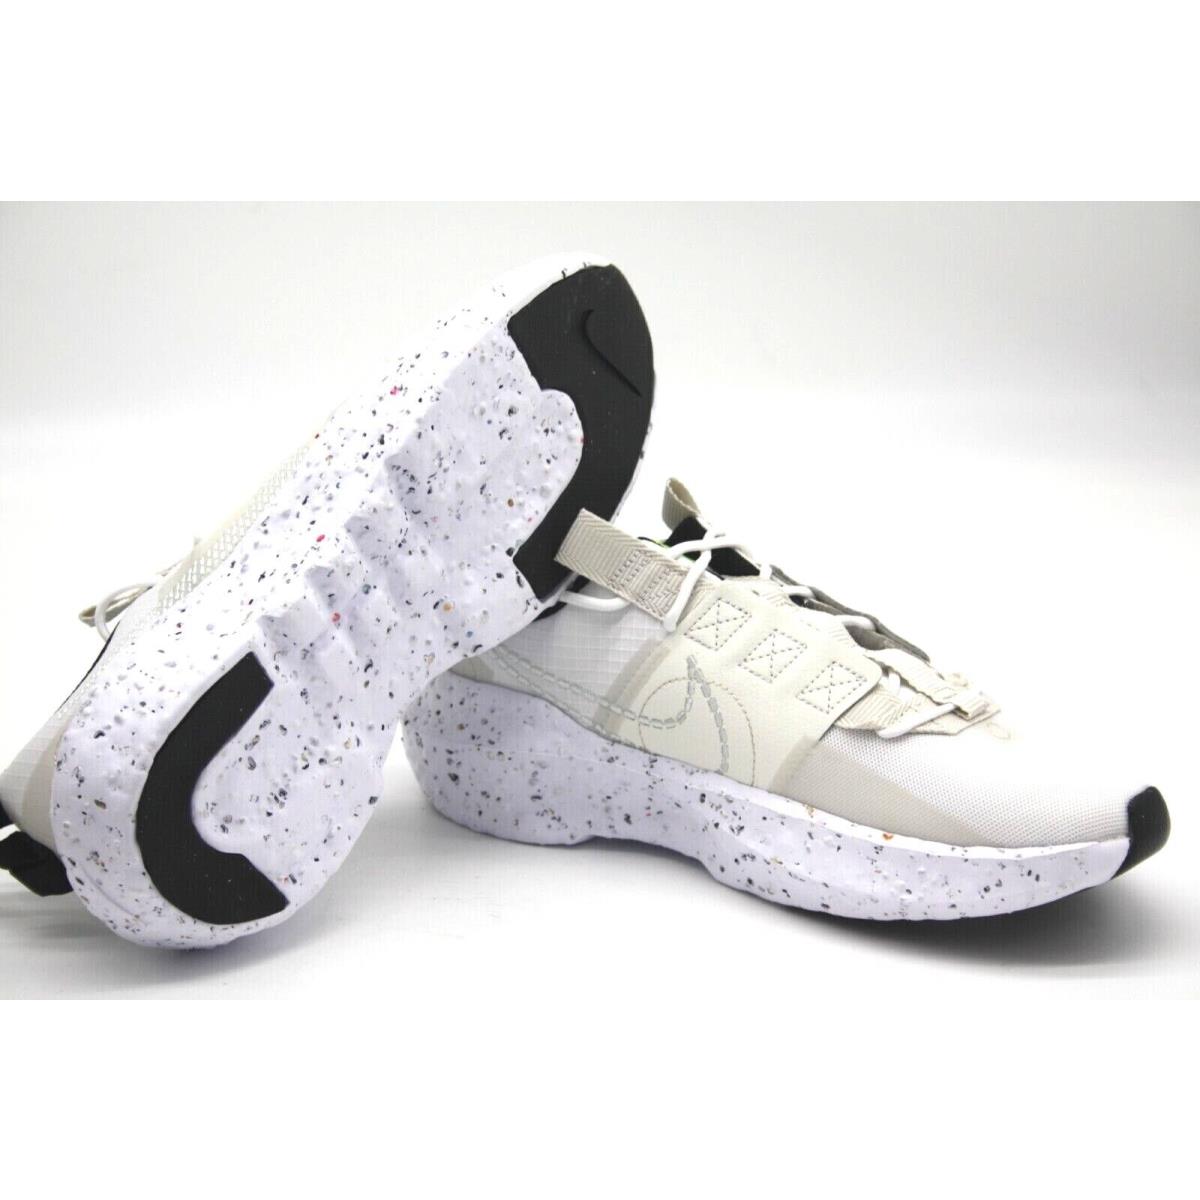 Nike shoes Crater Impact - WHITE/LIGHT BONE-SAIL-VOLT 6